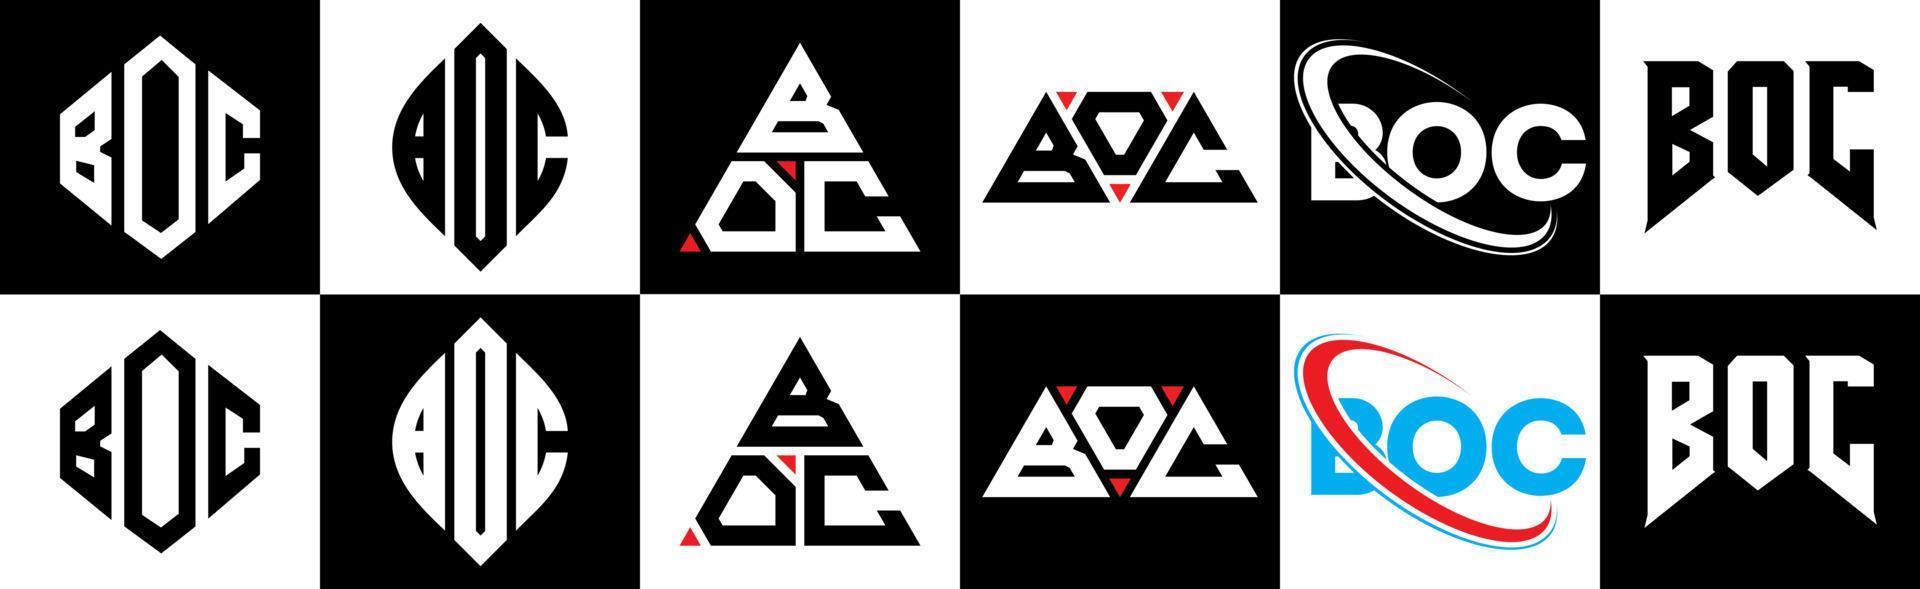 création de logo de lettre boc en six styles. boc polygone, cercle, triangle, hexagone, style plat et simple avec logo de lettre de variation de couleur noir et blanc dans un plan de travail. boc logo minimaliste et classique vecteur